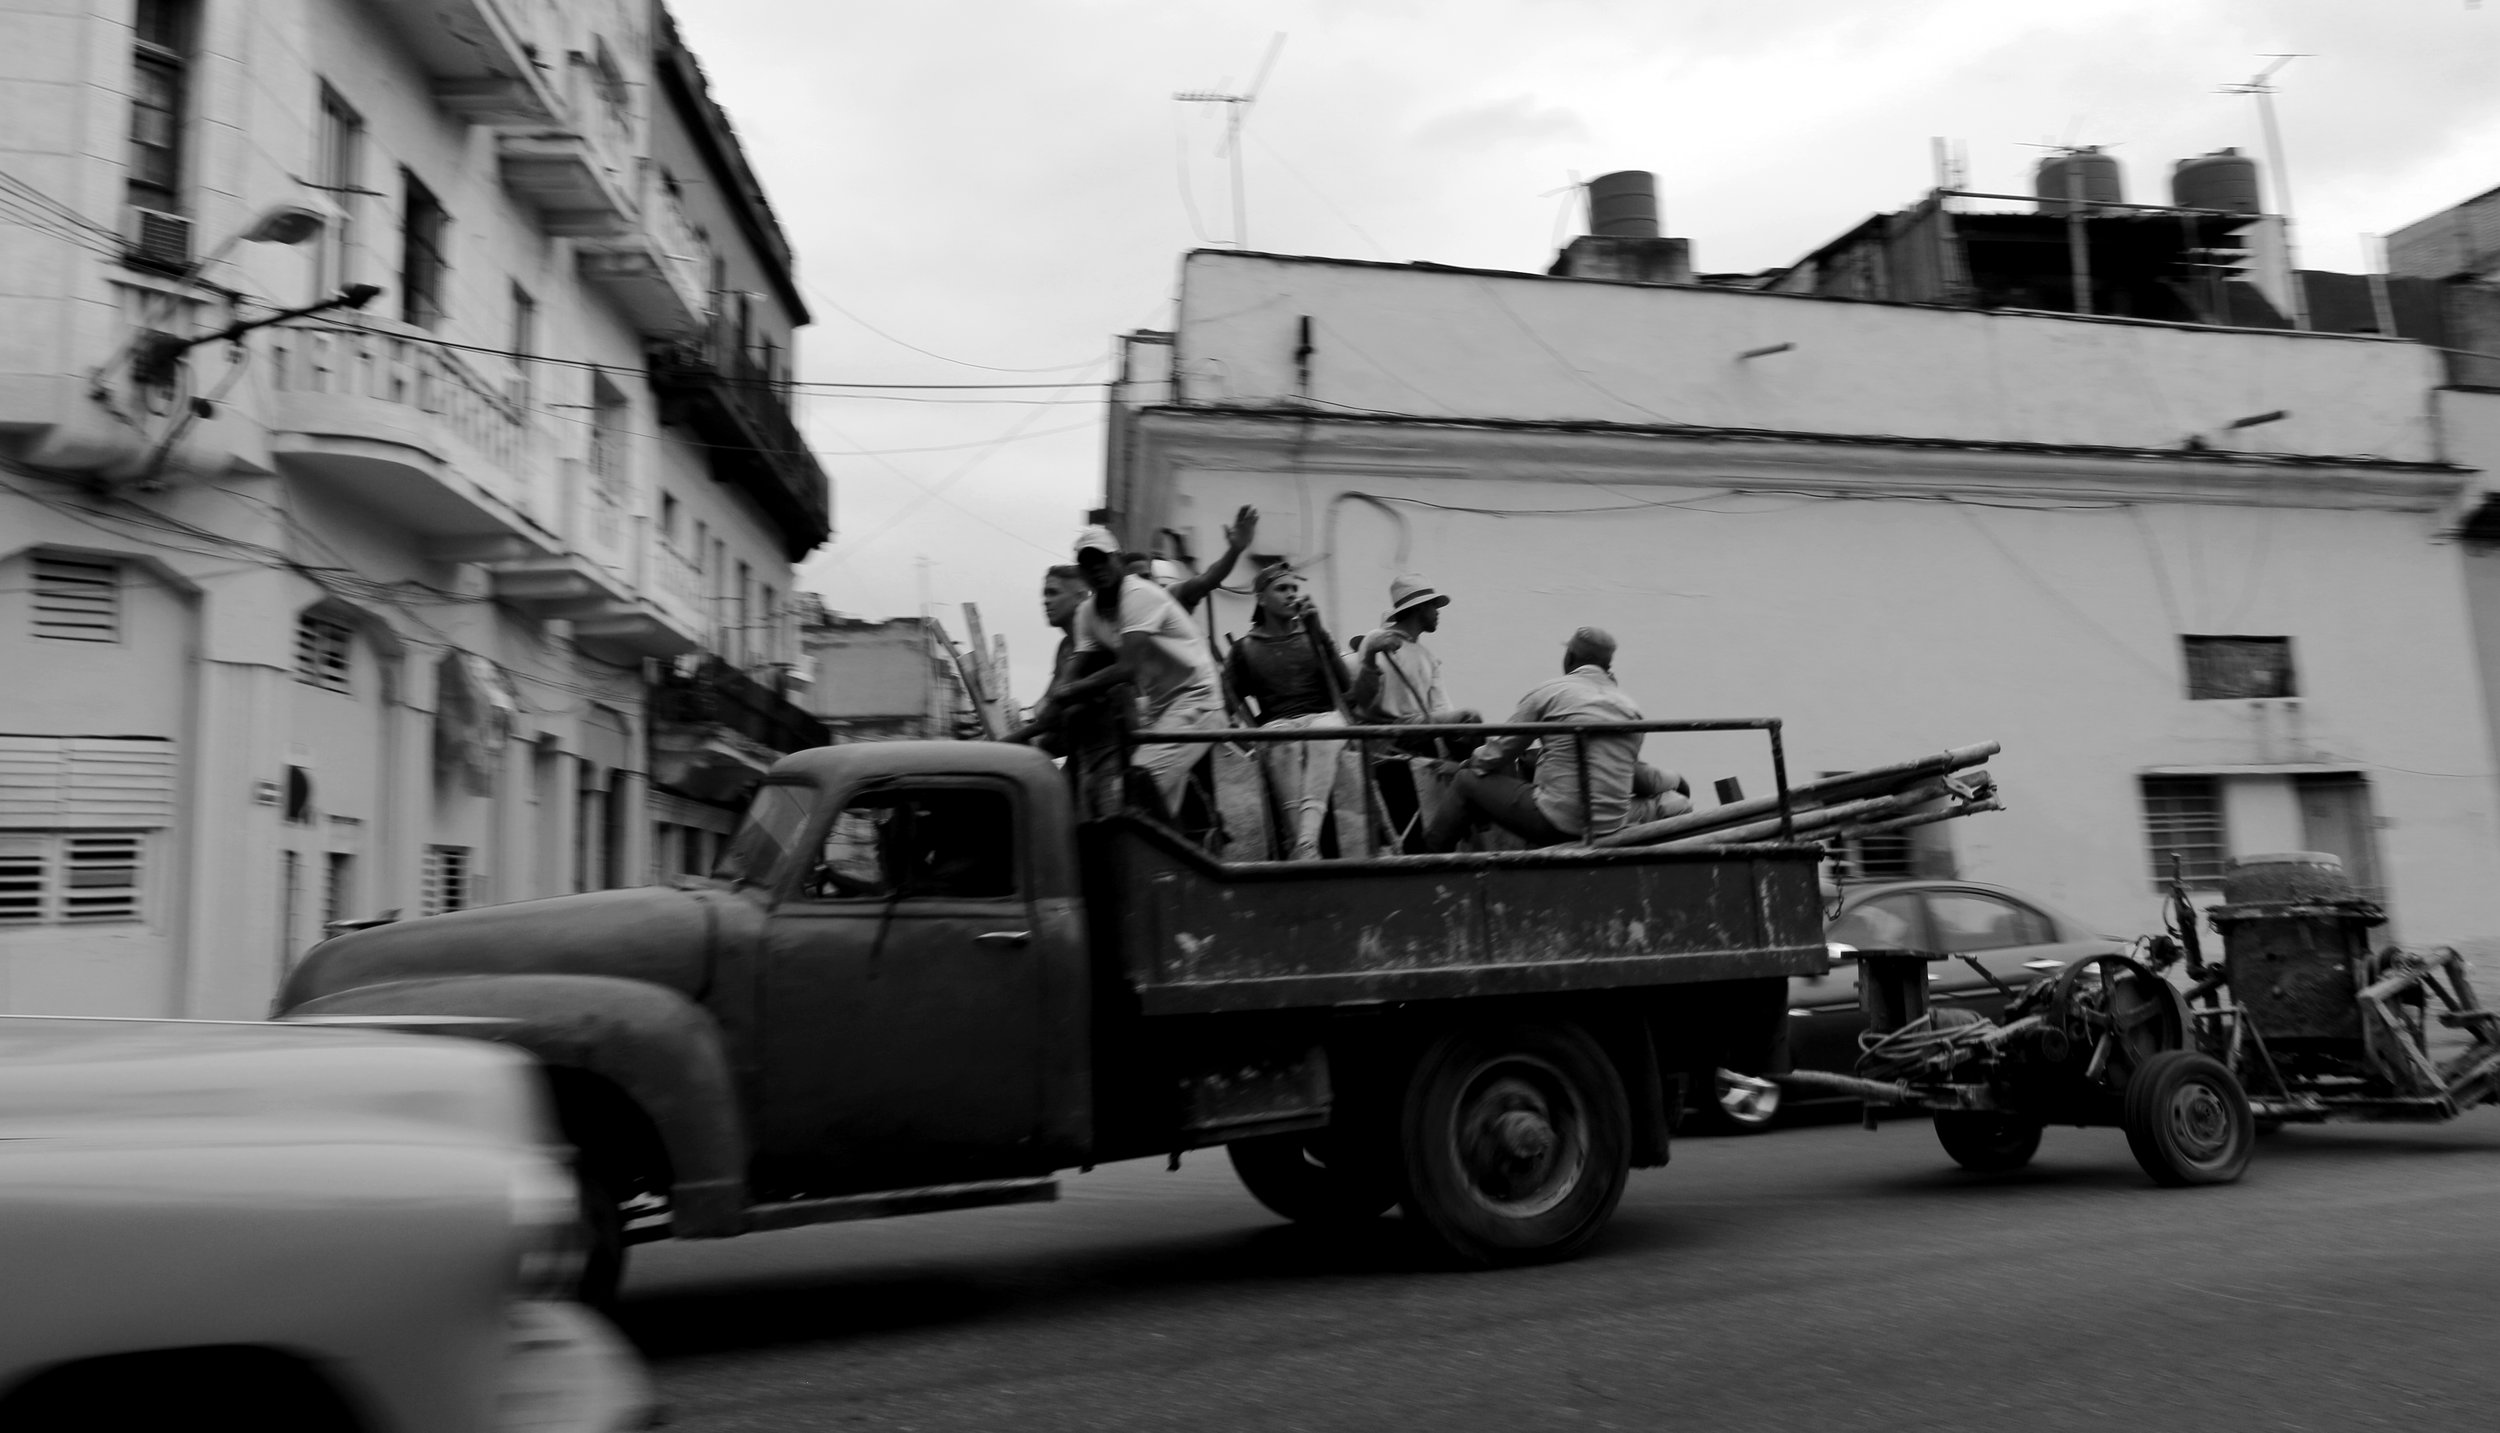  Havana, Cuba&nbsp;  2018 